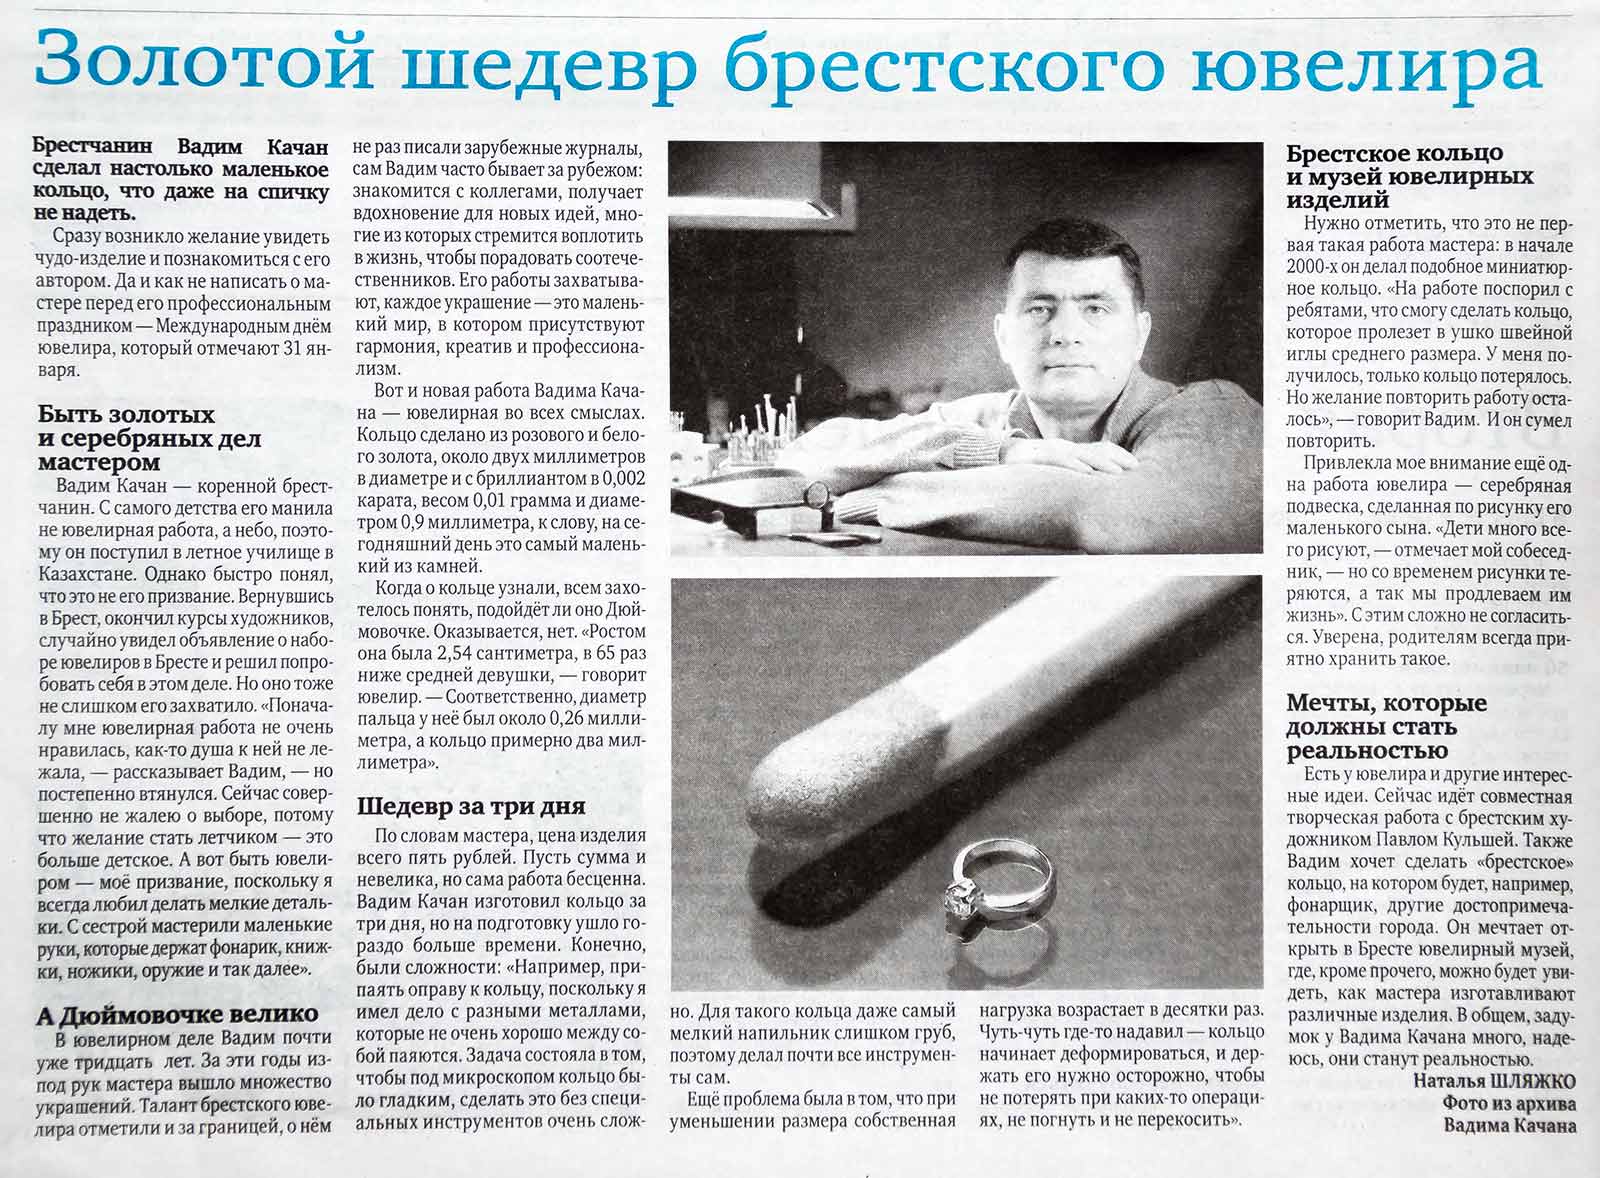 Брестские газеты о Вадиме Качане: статья о золотом шедевре